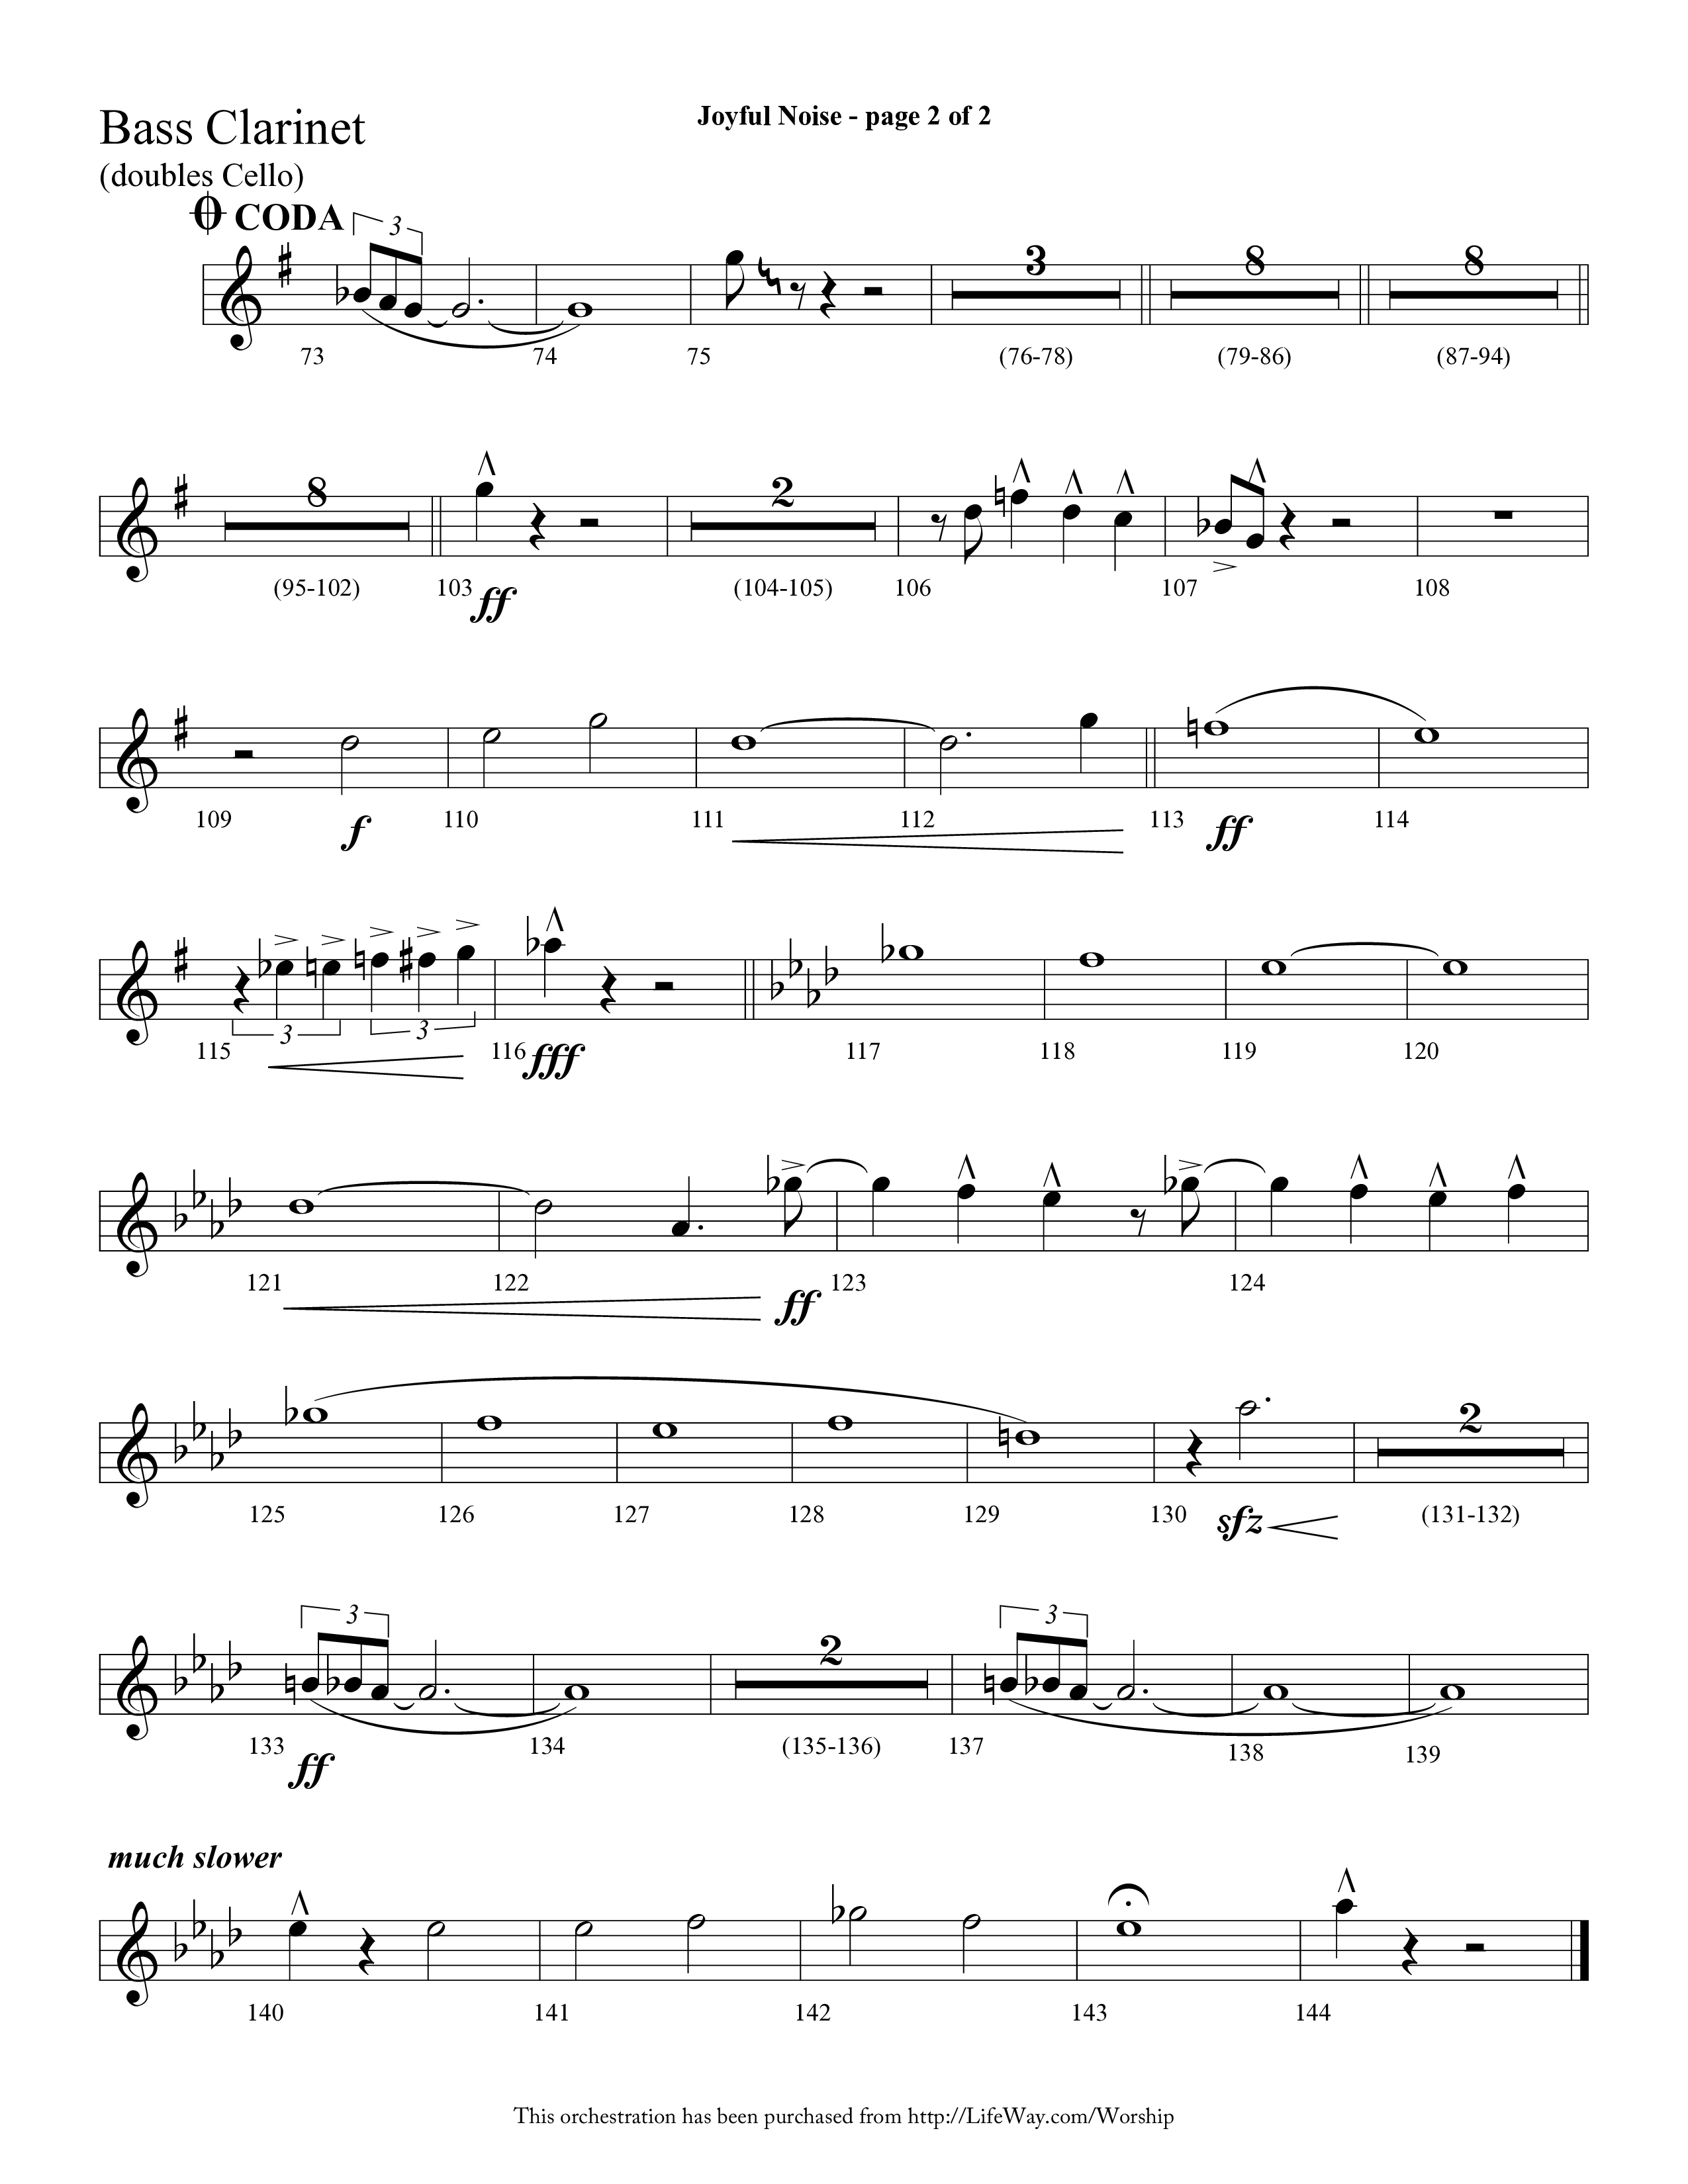 Joyful Noise (Choral Anthem SATB) Bass Clarinet (Lifeway Choral / Arr. Cliff Duren)